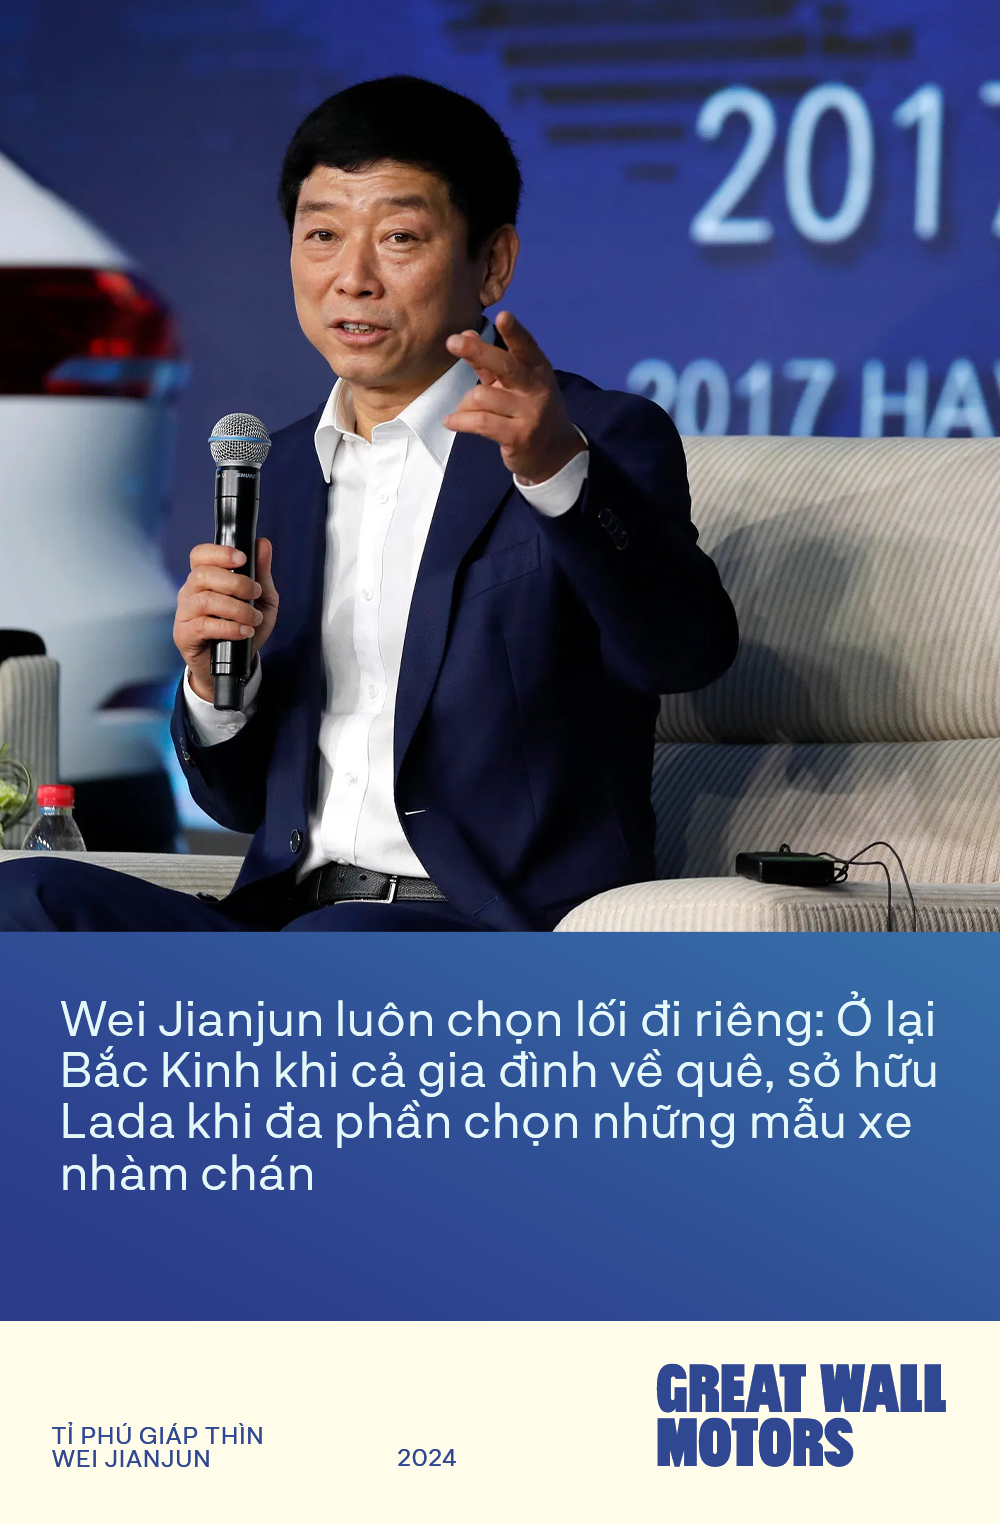 Tỉ phú Giáp Thìn Wei Jianjun - Người biến hãng xe Trung Quốc từ căn tường đổ sụp tới ‘Vạn lý trường thành’- Ảnh 1.